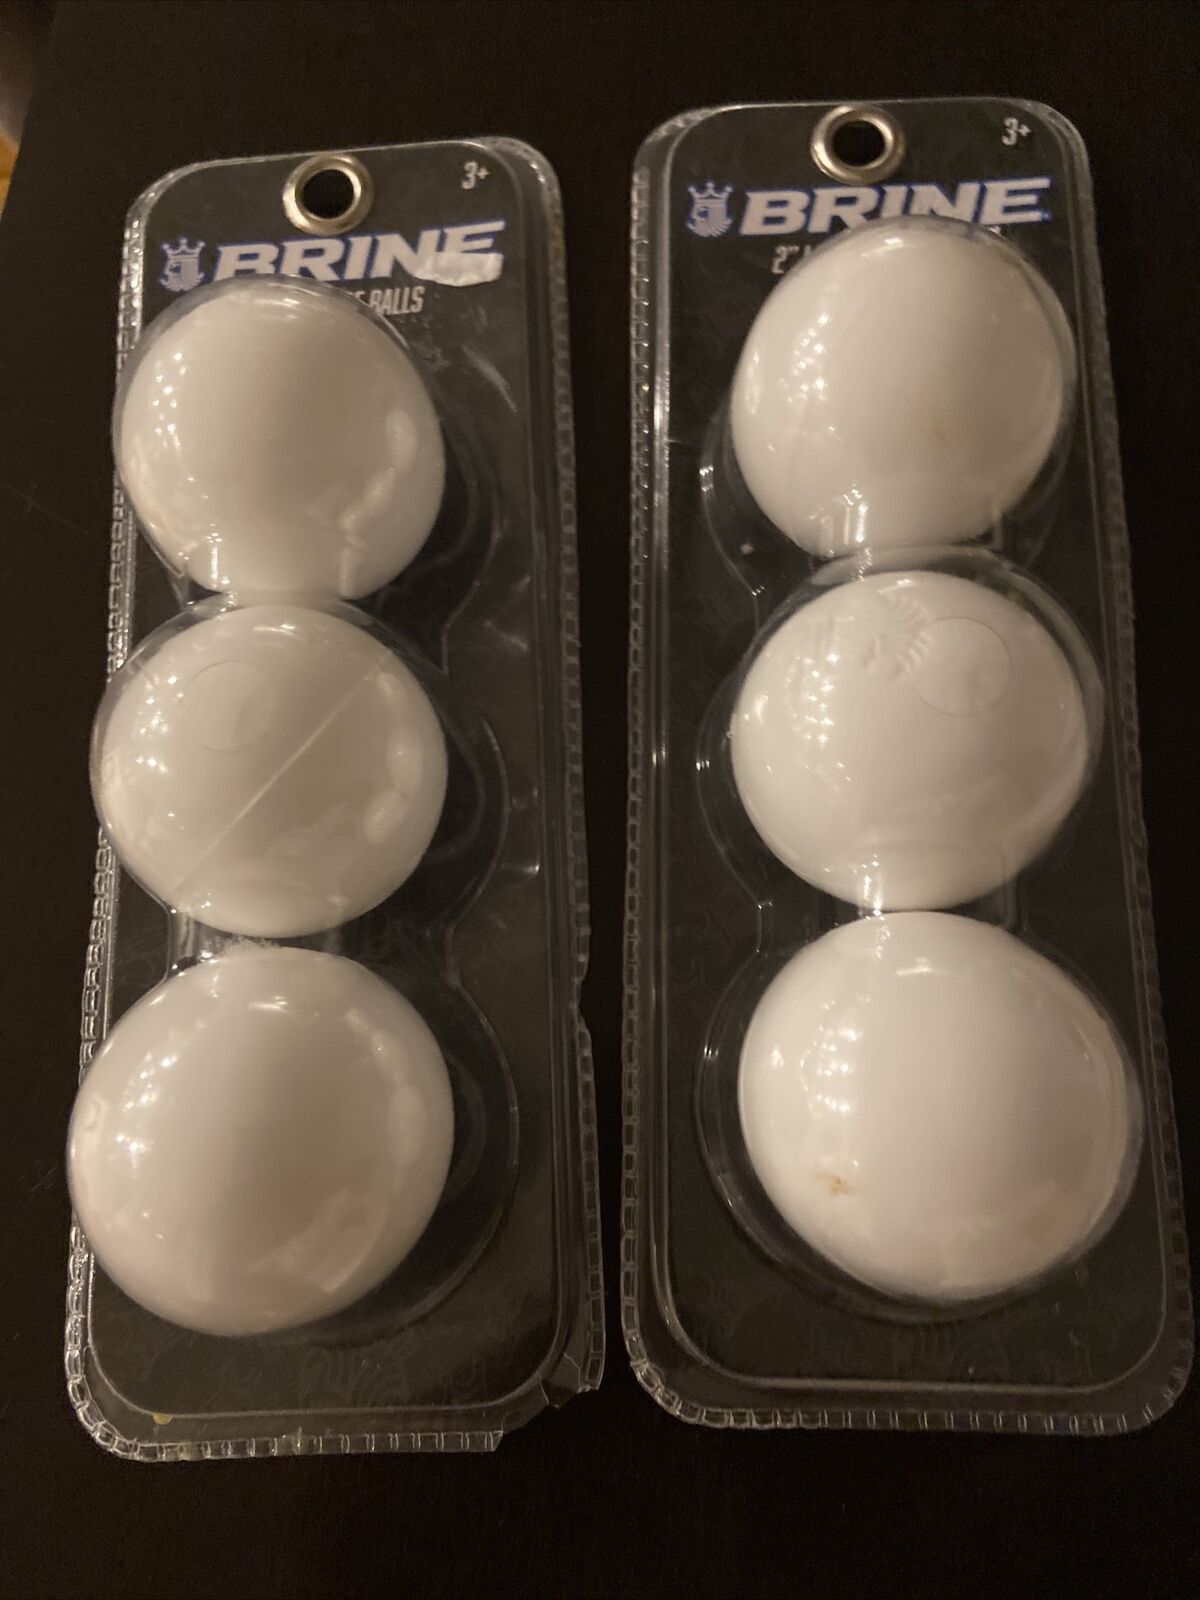 New Sealed Brine 2" Lacrosse Balls White - 2 Packs Of 3 Balls Each